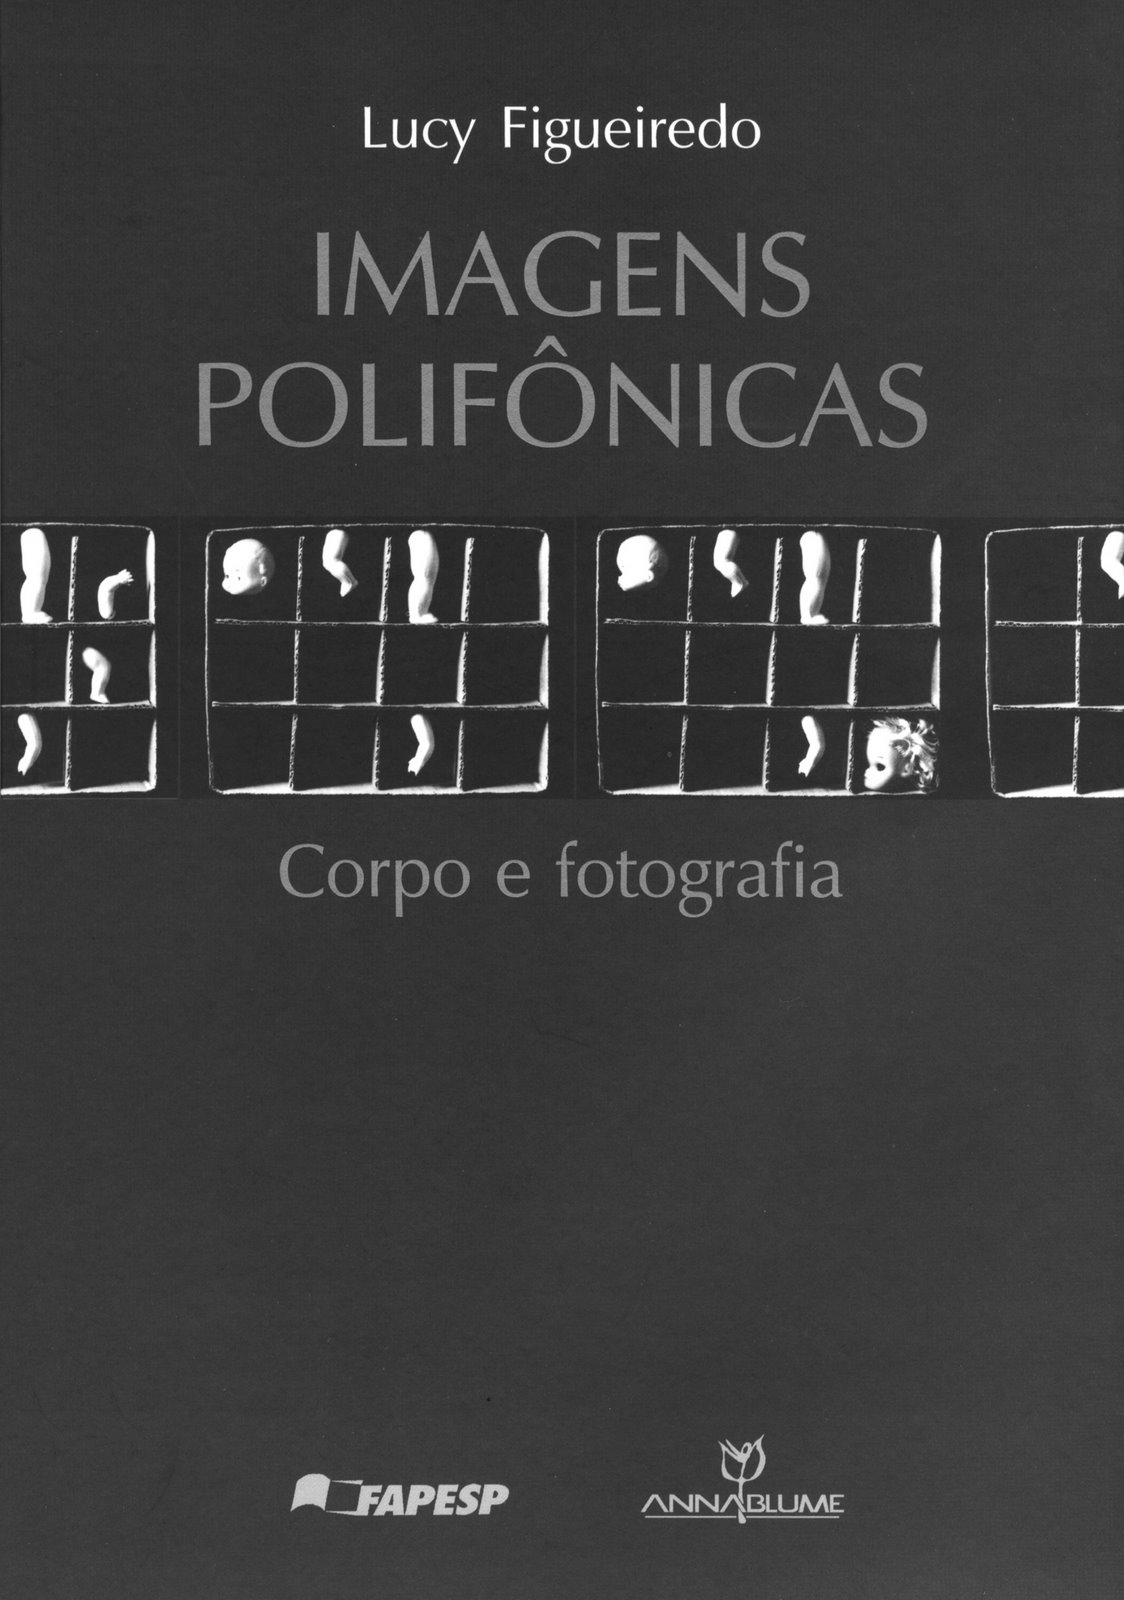 [Capa+Imagens+Polifonicas+de+Lucy+Figueiredo.JPG]